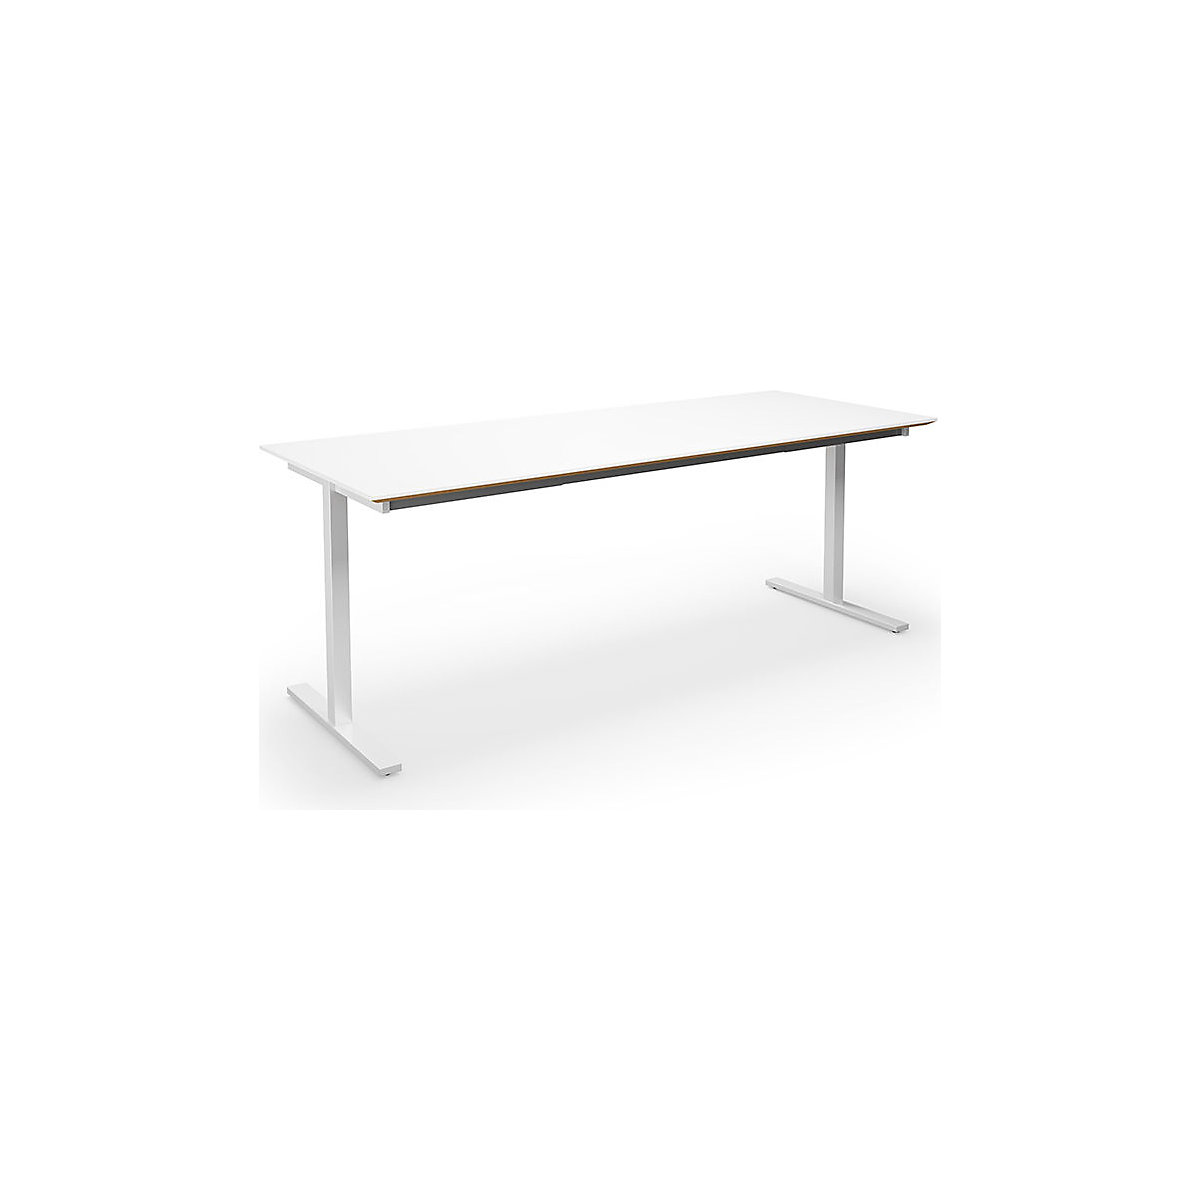 DUO-T Trend multi-purpose desk, straight tabletop